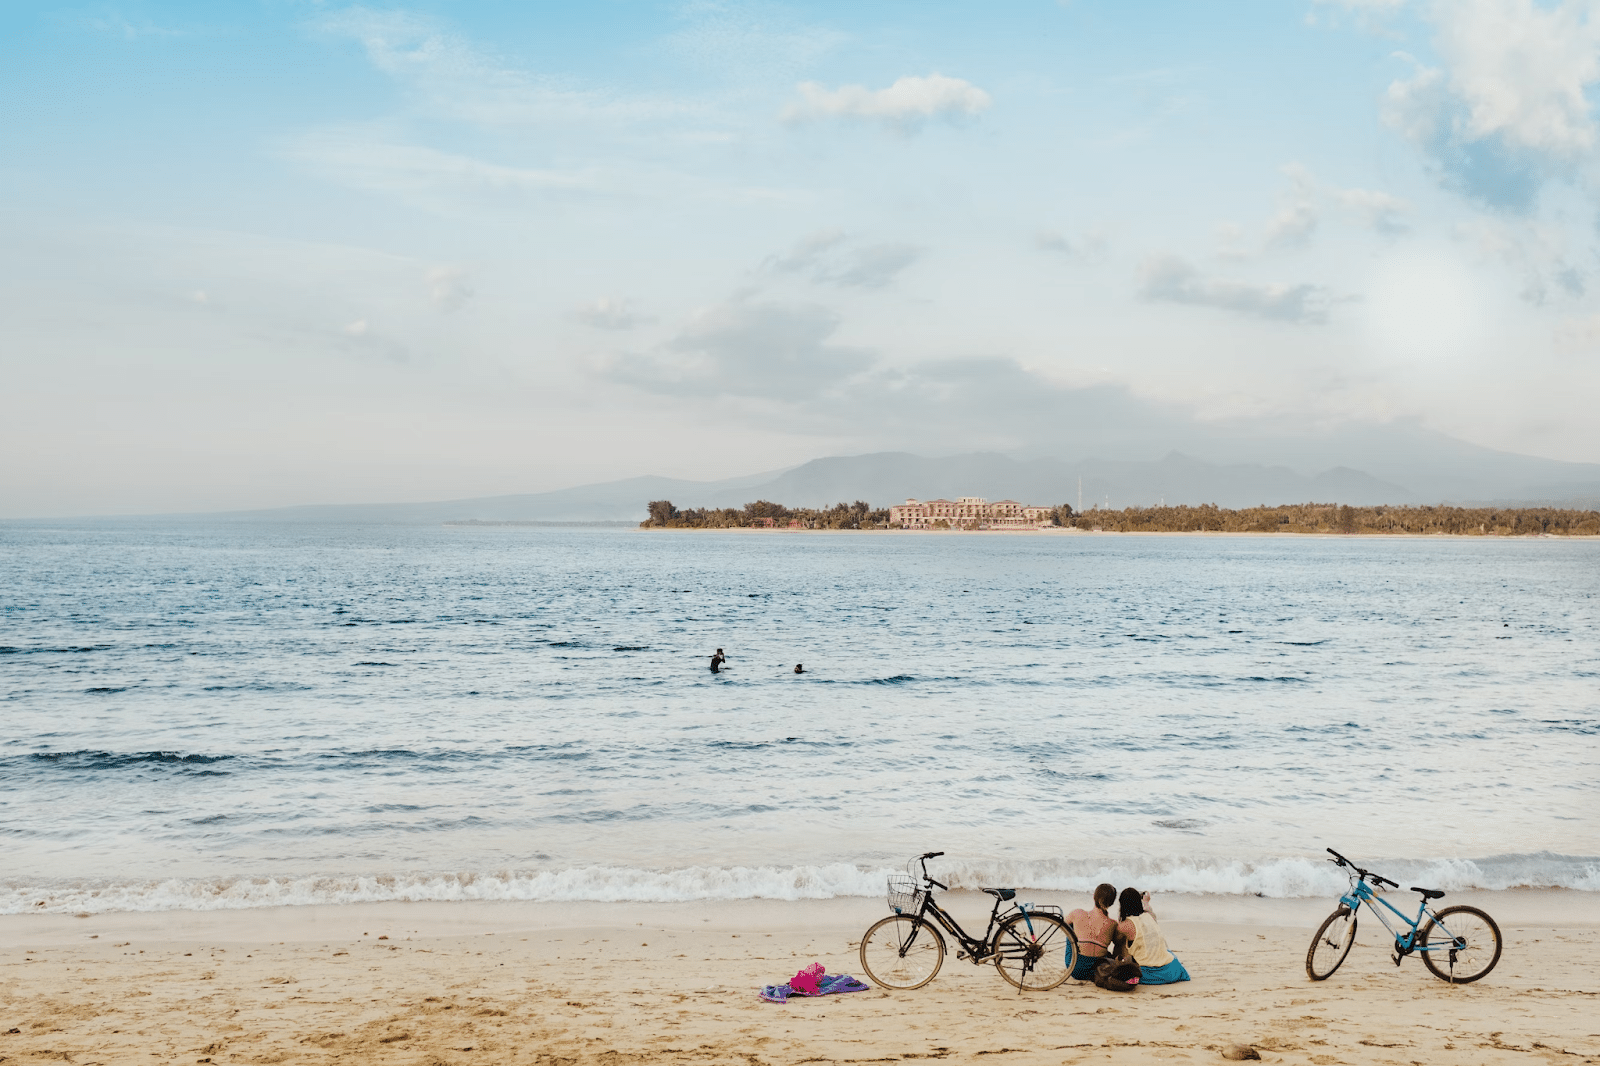 Una playa de Gili Meno, Los visitantes de la playa se desplazan en bicicleta.